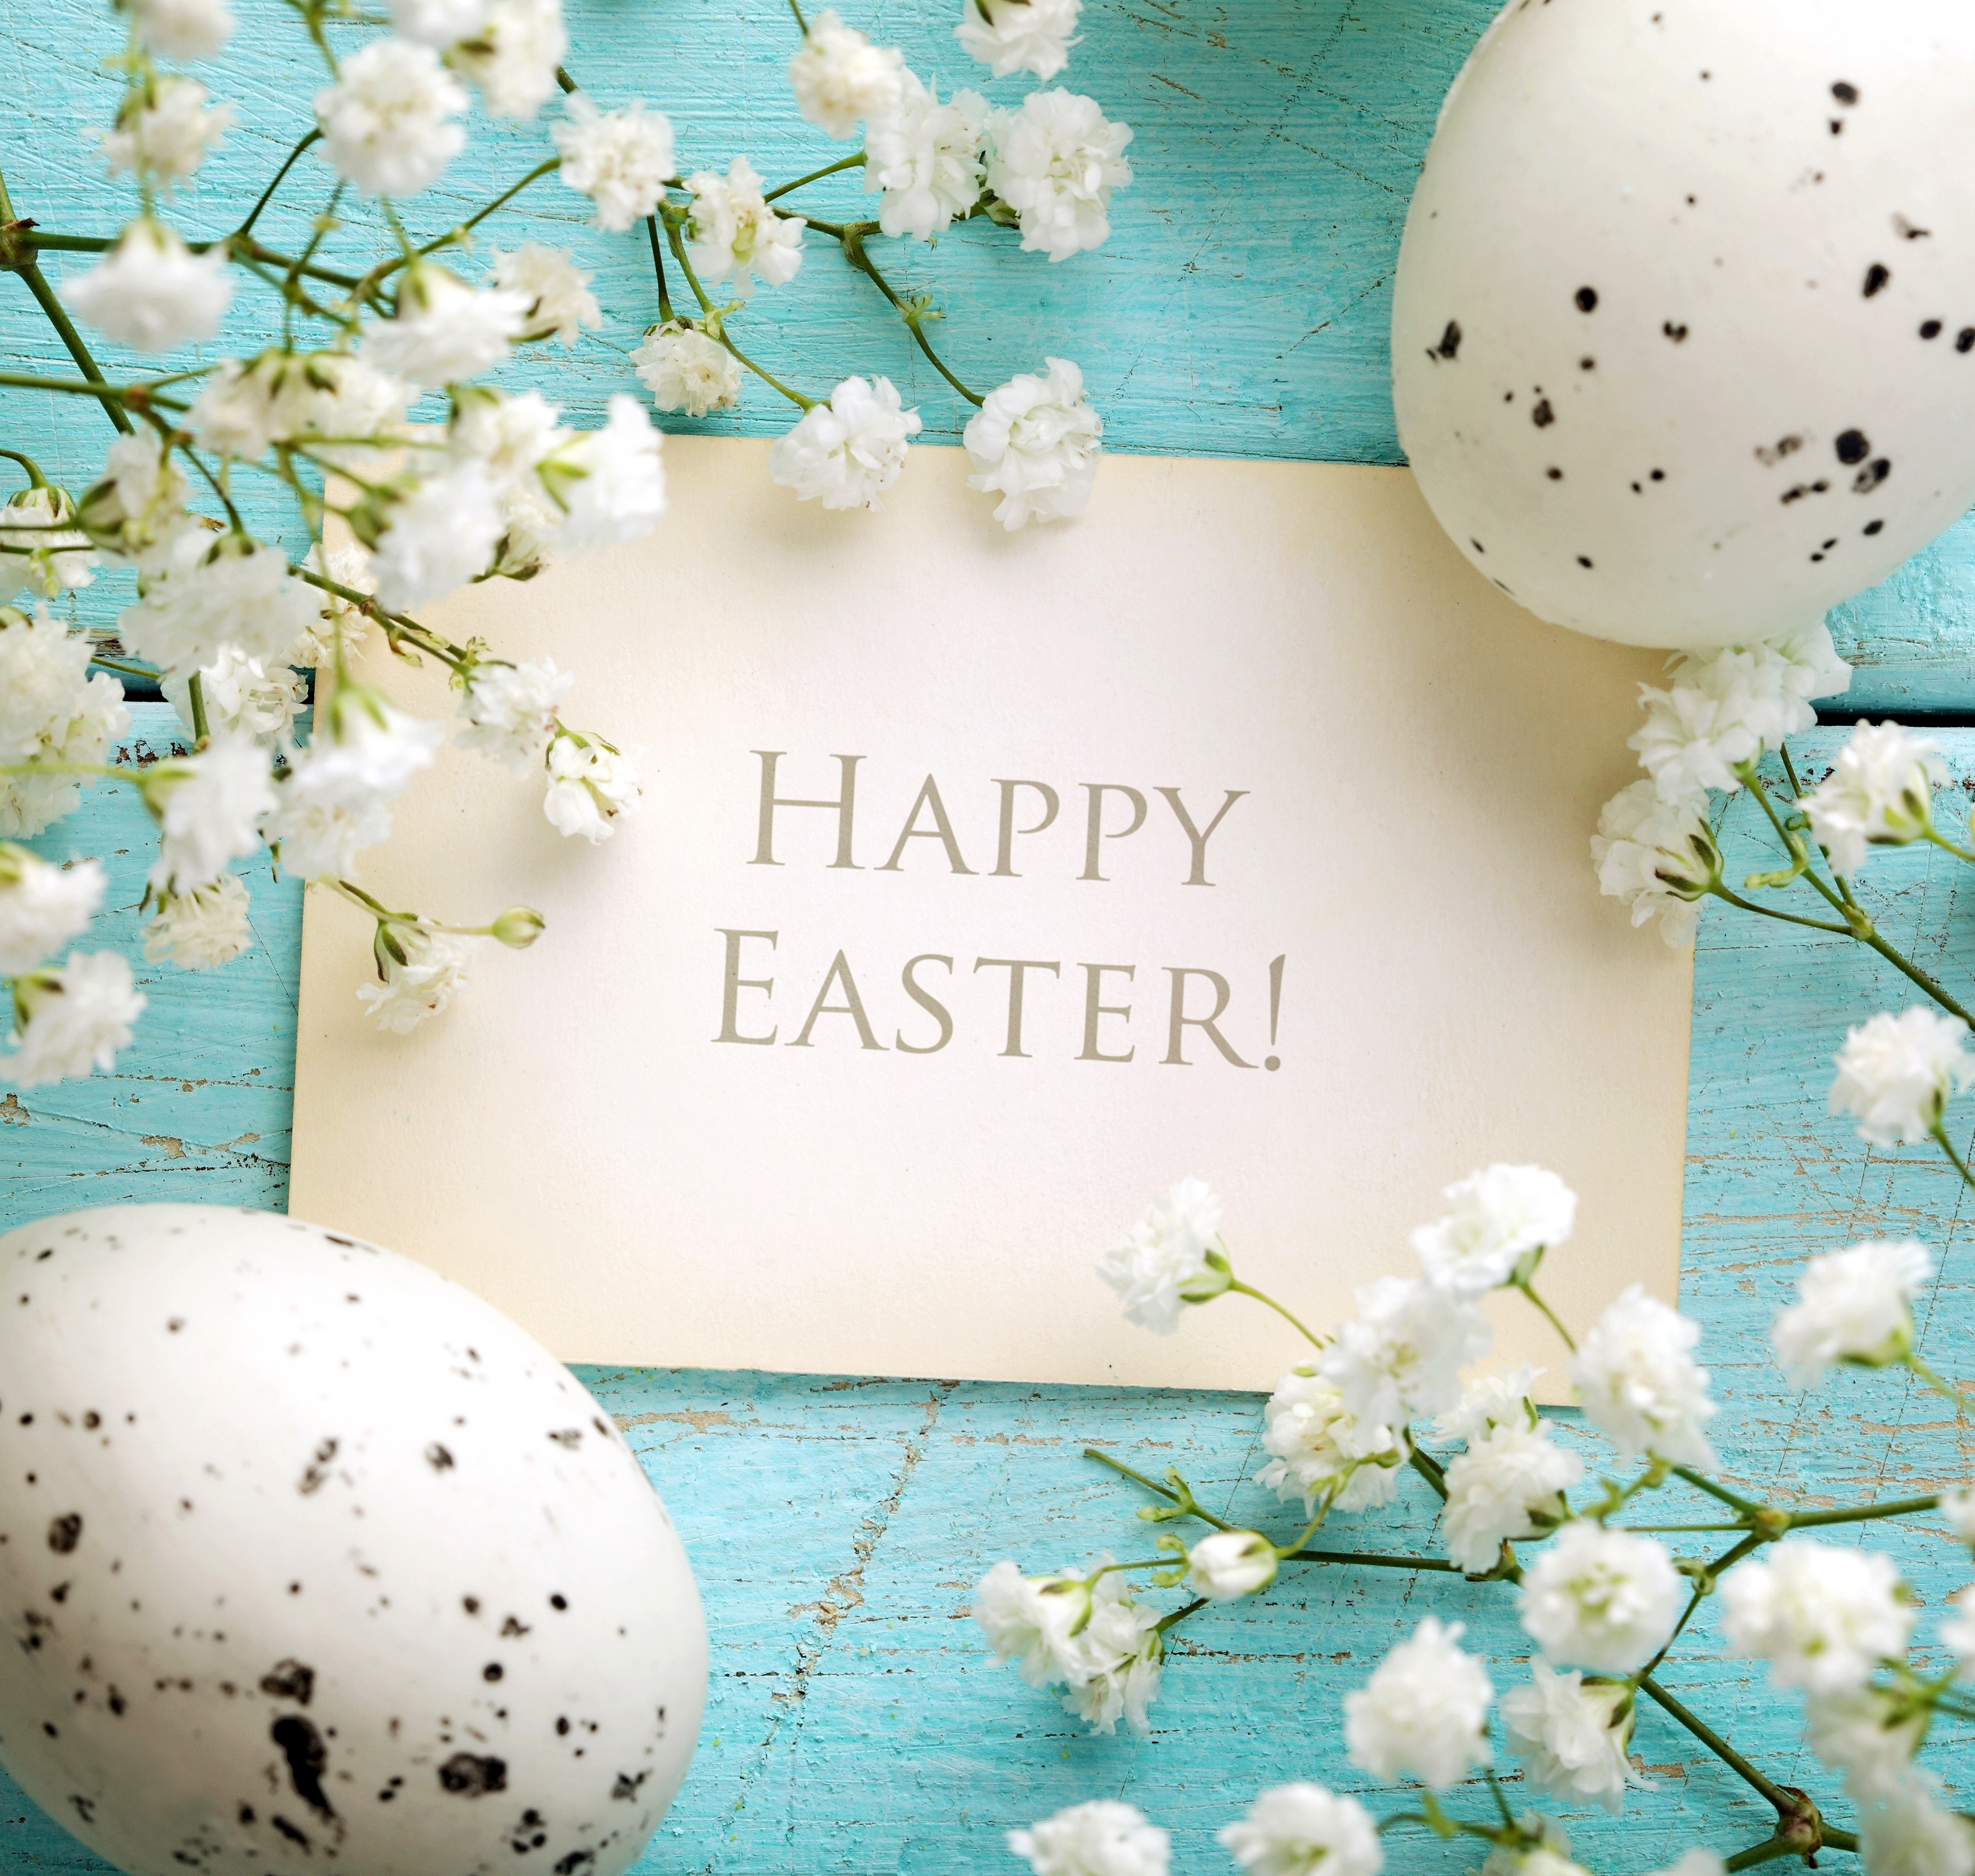 Happy Easter Image For Desktop Wallpaper Background